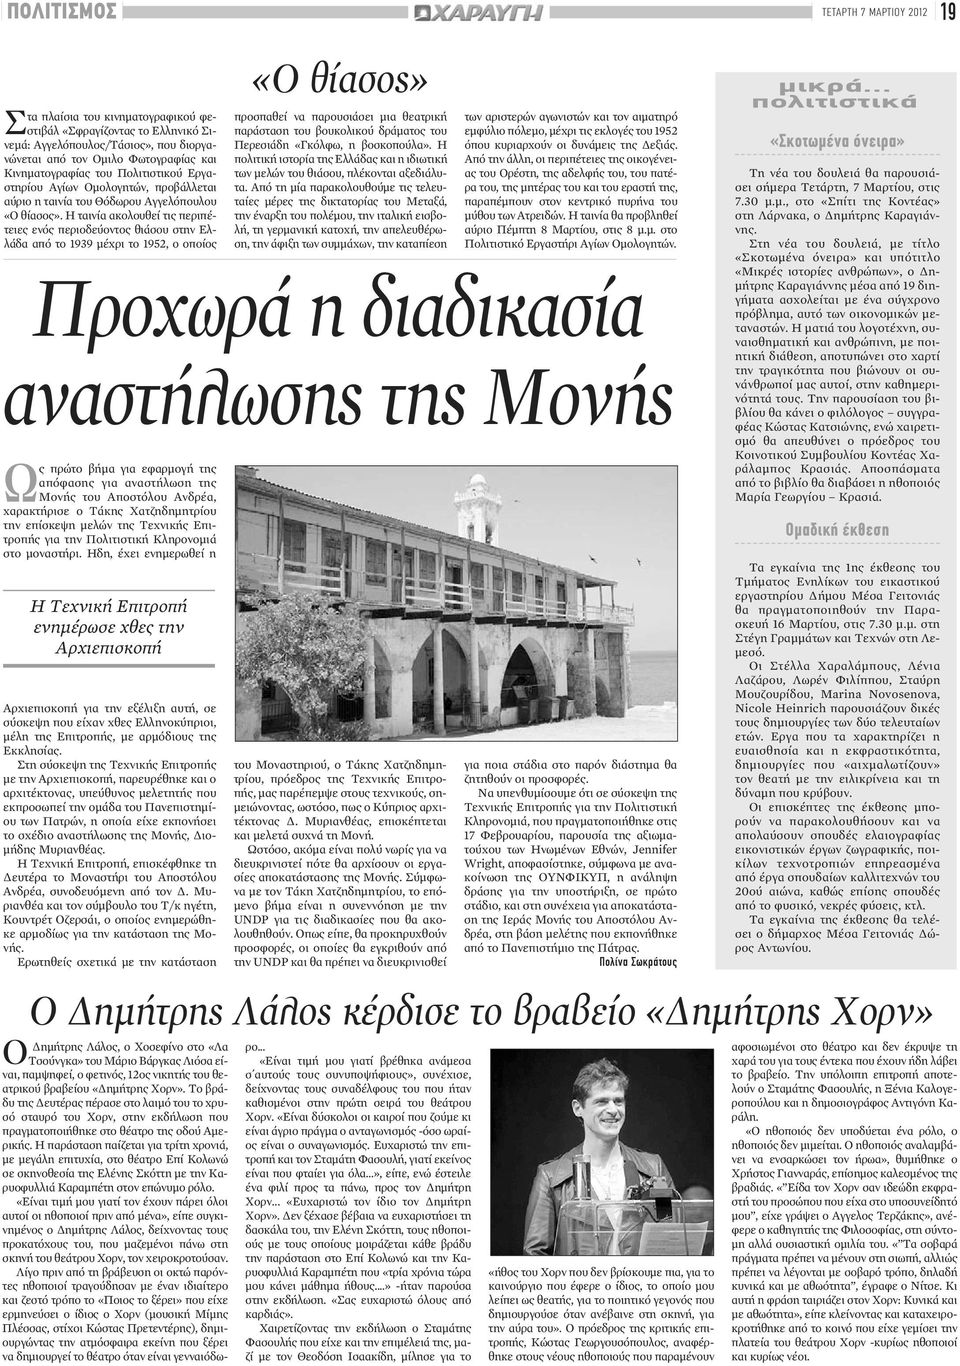 Η ταινία ακολουθεί τις περιπέτειες ενός περιοδεύοντος θιάσου στην Ελλάδα από το 1939 μέχρι το 1952, ο οποίος «Ο θίασος» προσπαθεί να παρουσιάσει μια θεατρική παράσταση του βουκολικού δράματος του